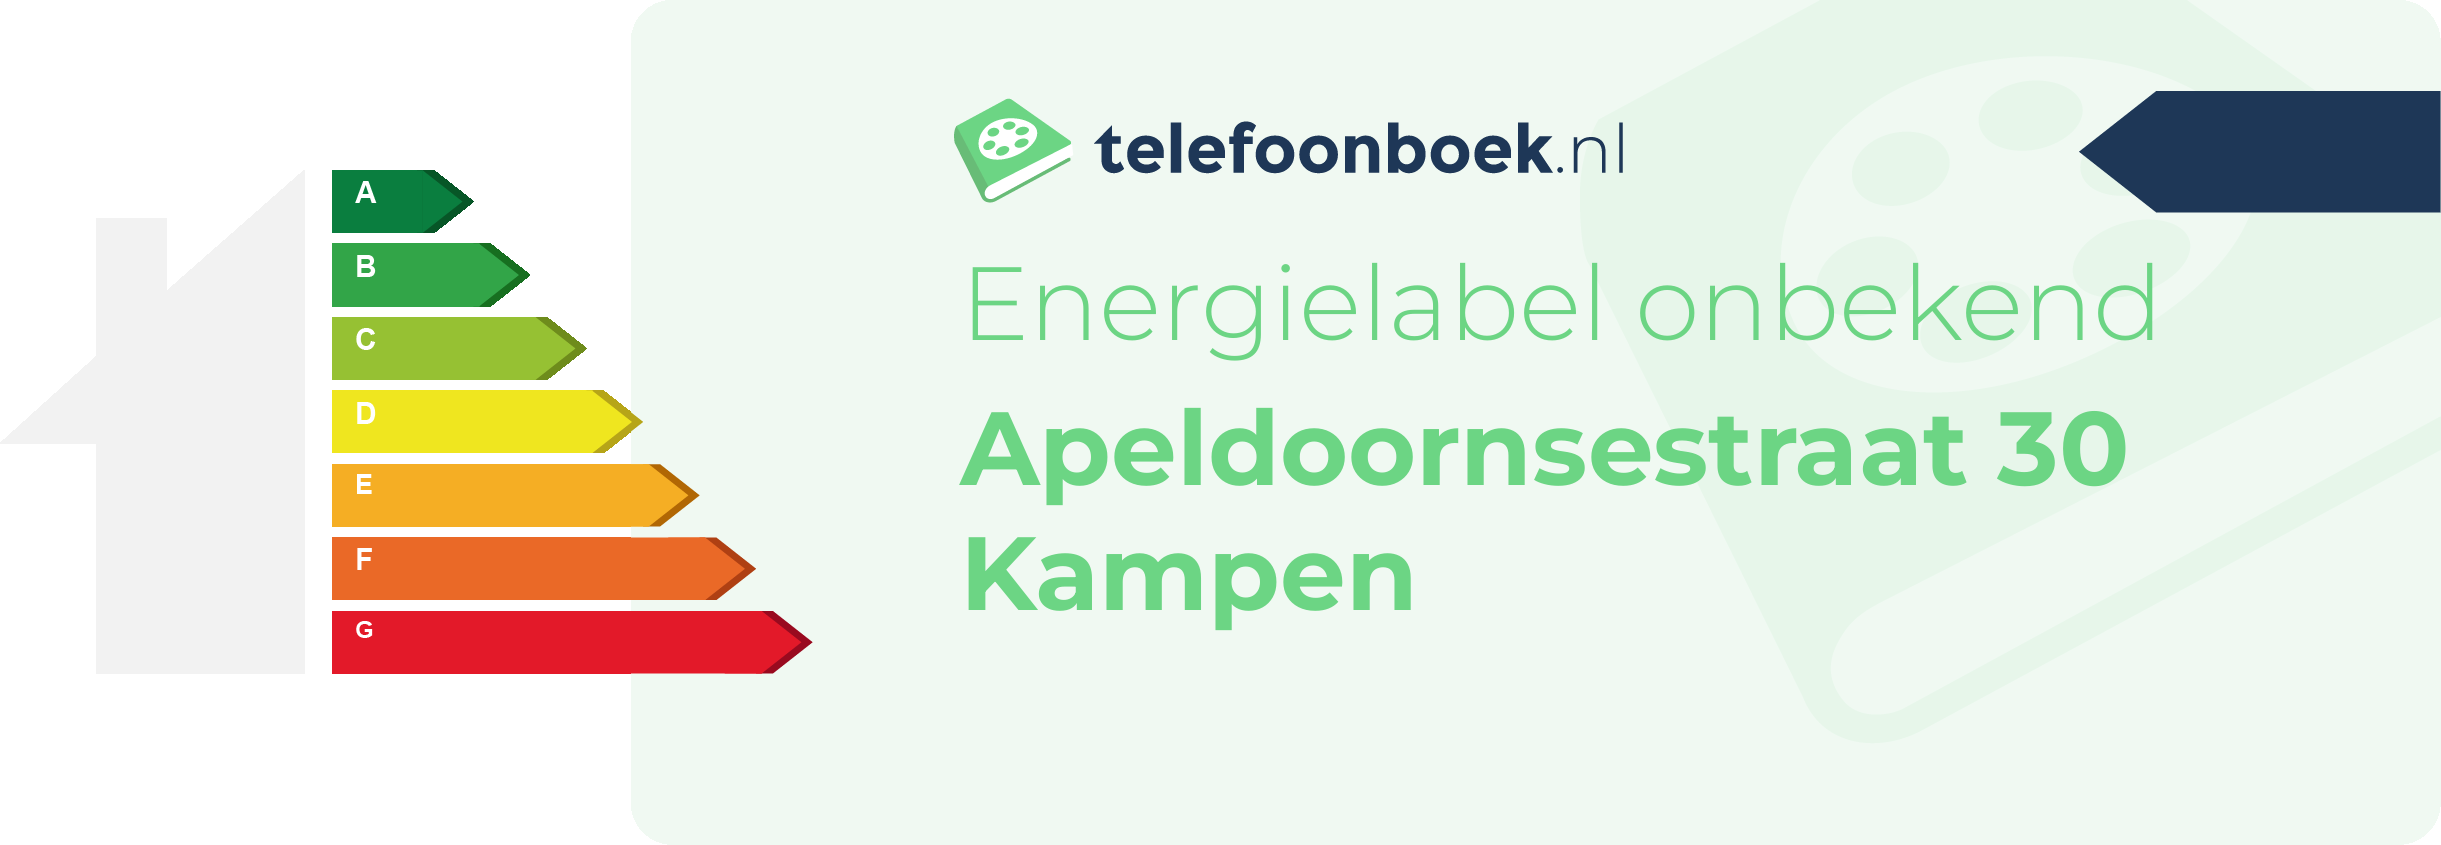 Energielabel Apeldoornsestraat 30 Kampen